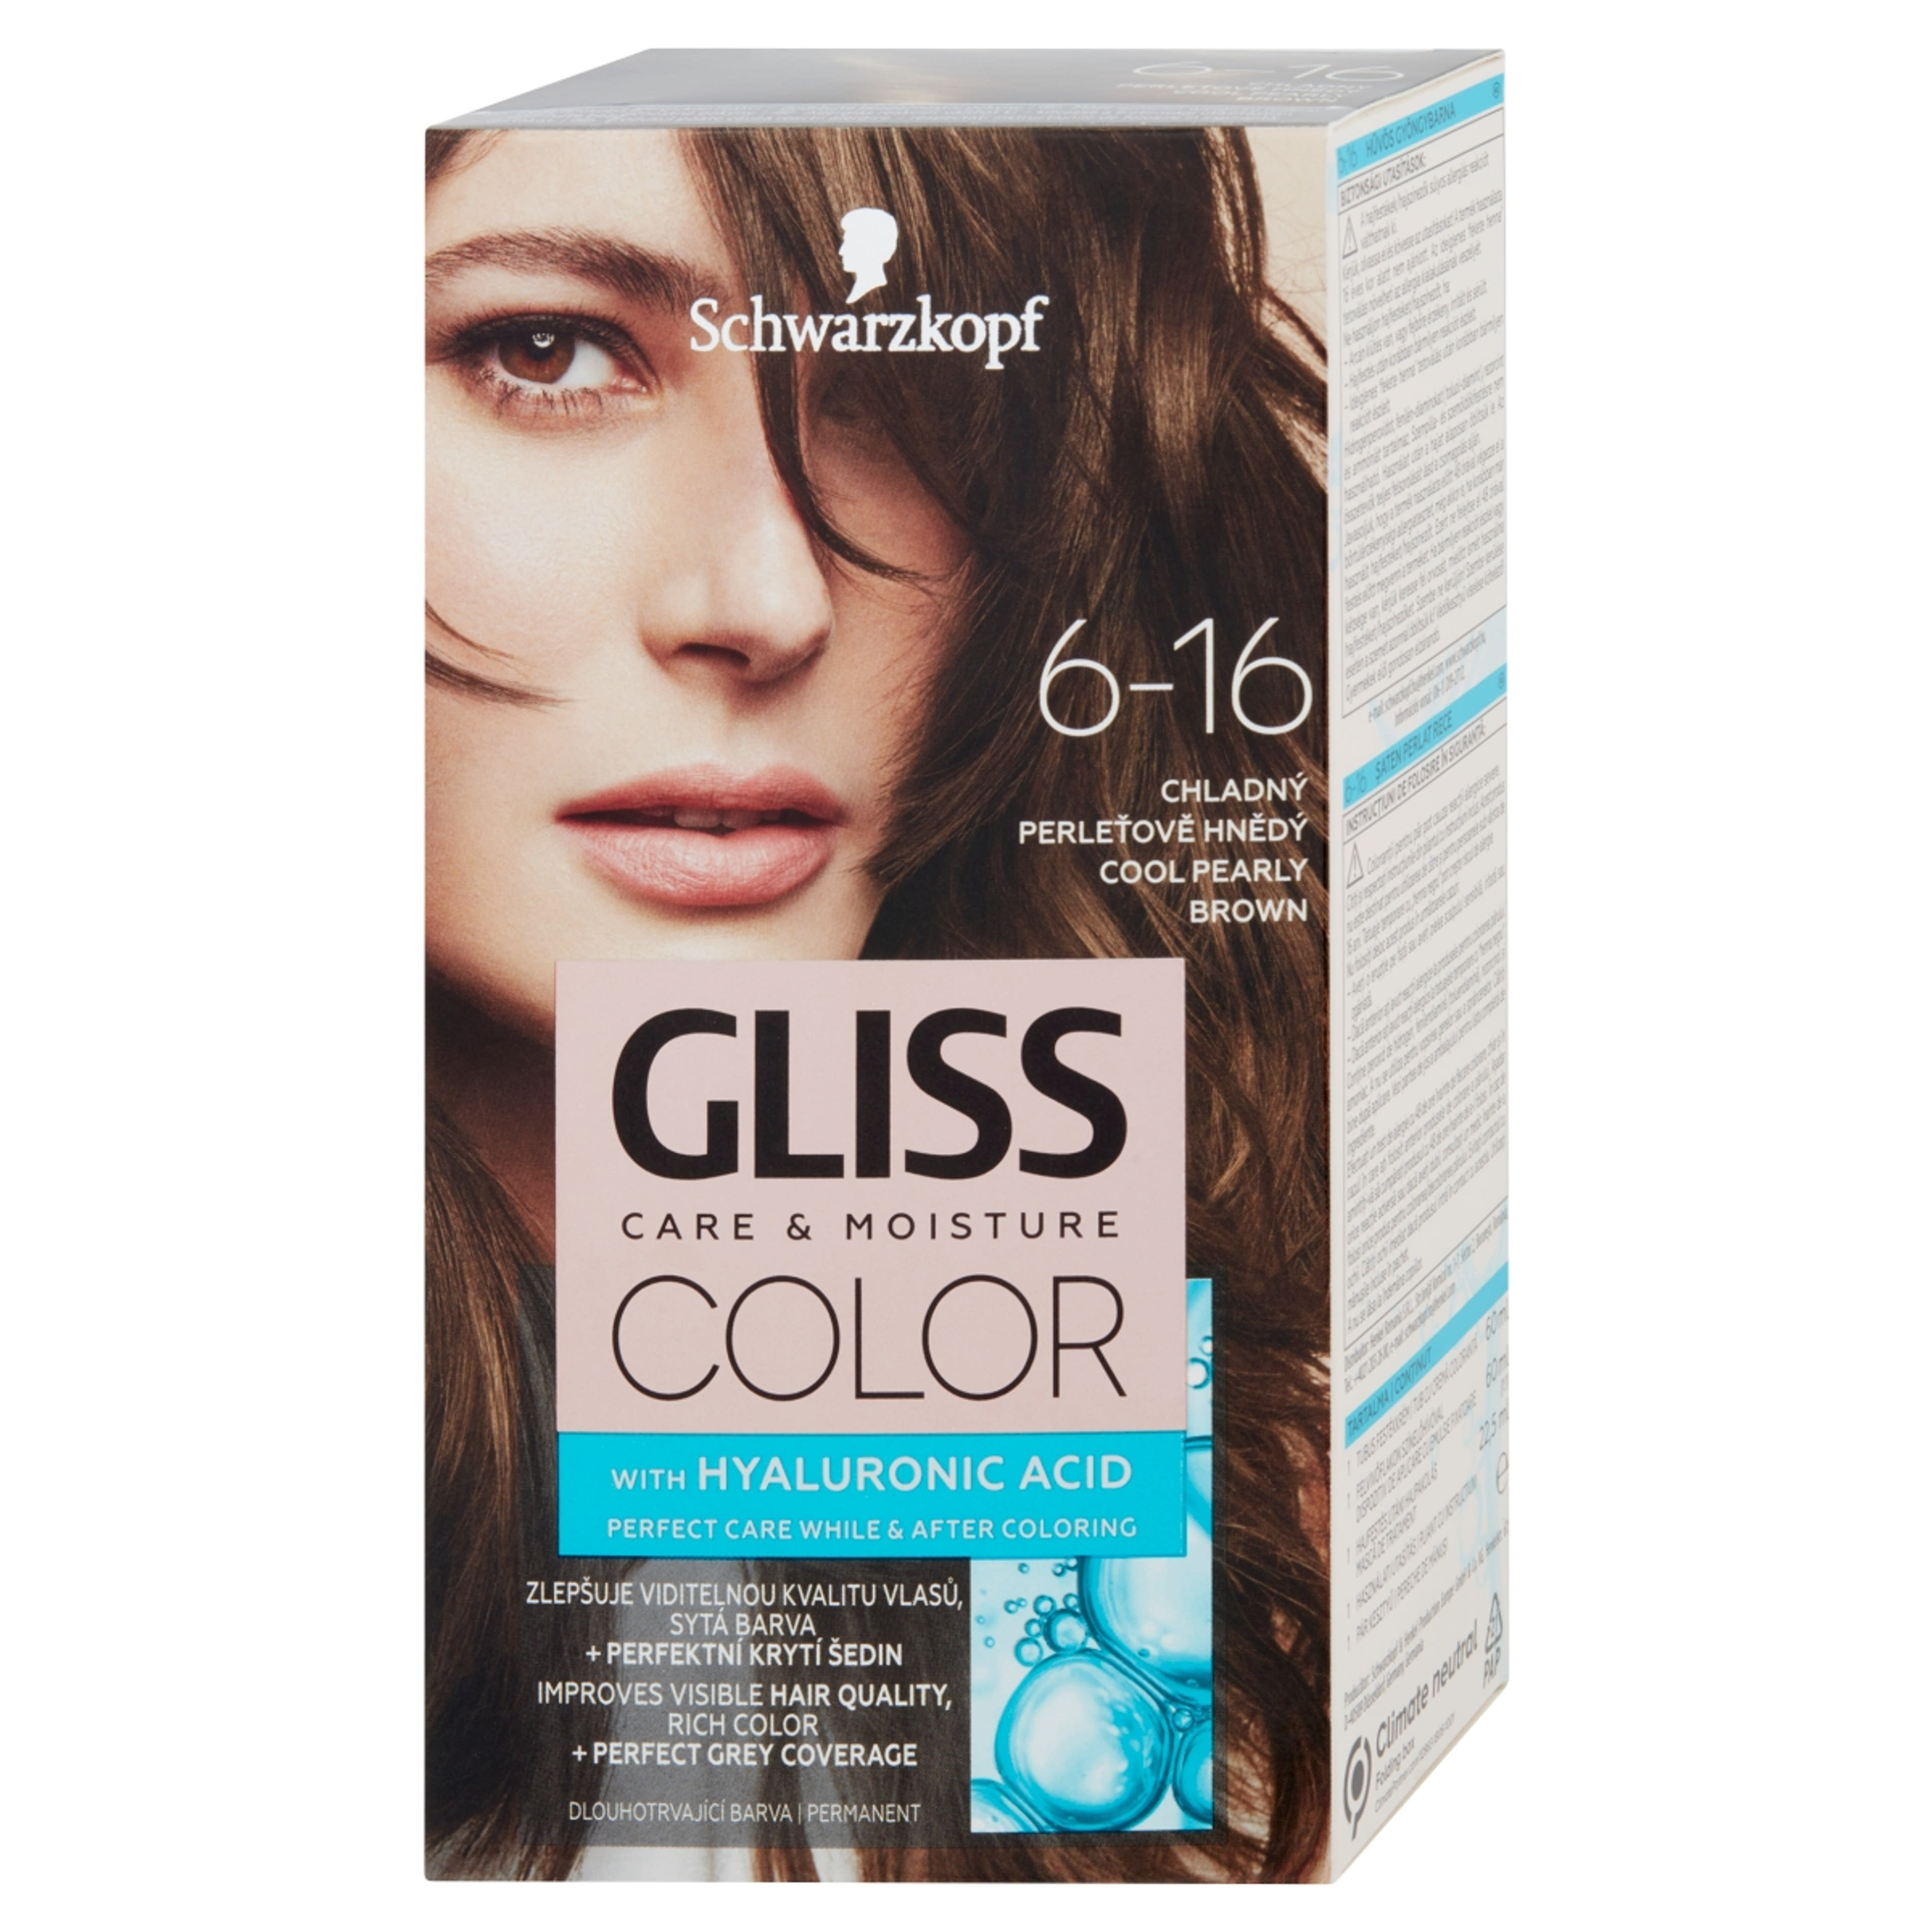 Gliss Color tartós hajfesték 6-16 Hűvös gyöngybarna - 1 db-2